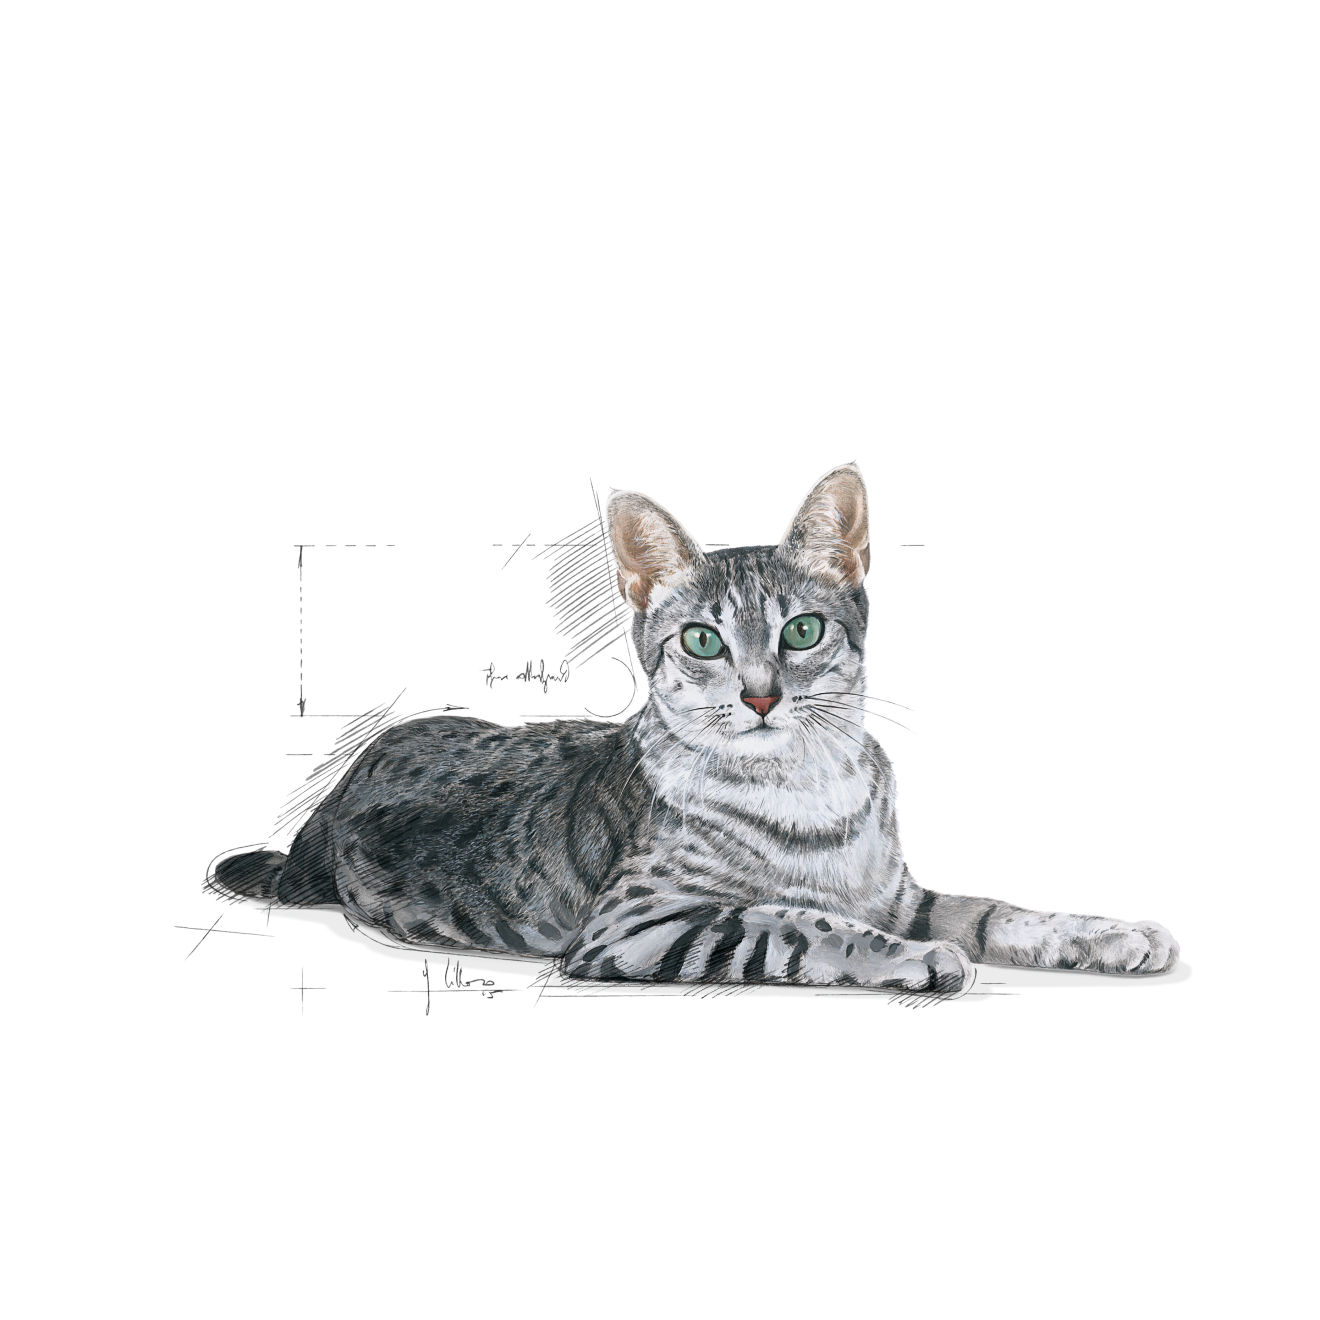 อาหารแมวสูงวัยเลี้ยงในบ้าน ชนิดเม็ด (INDOOR 7+)